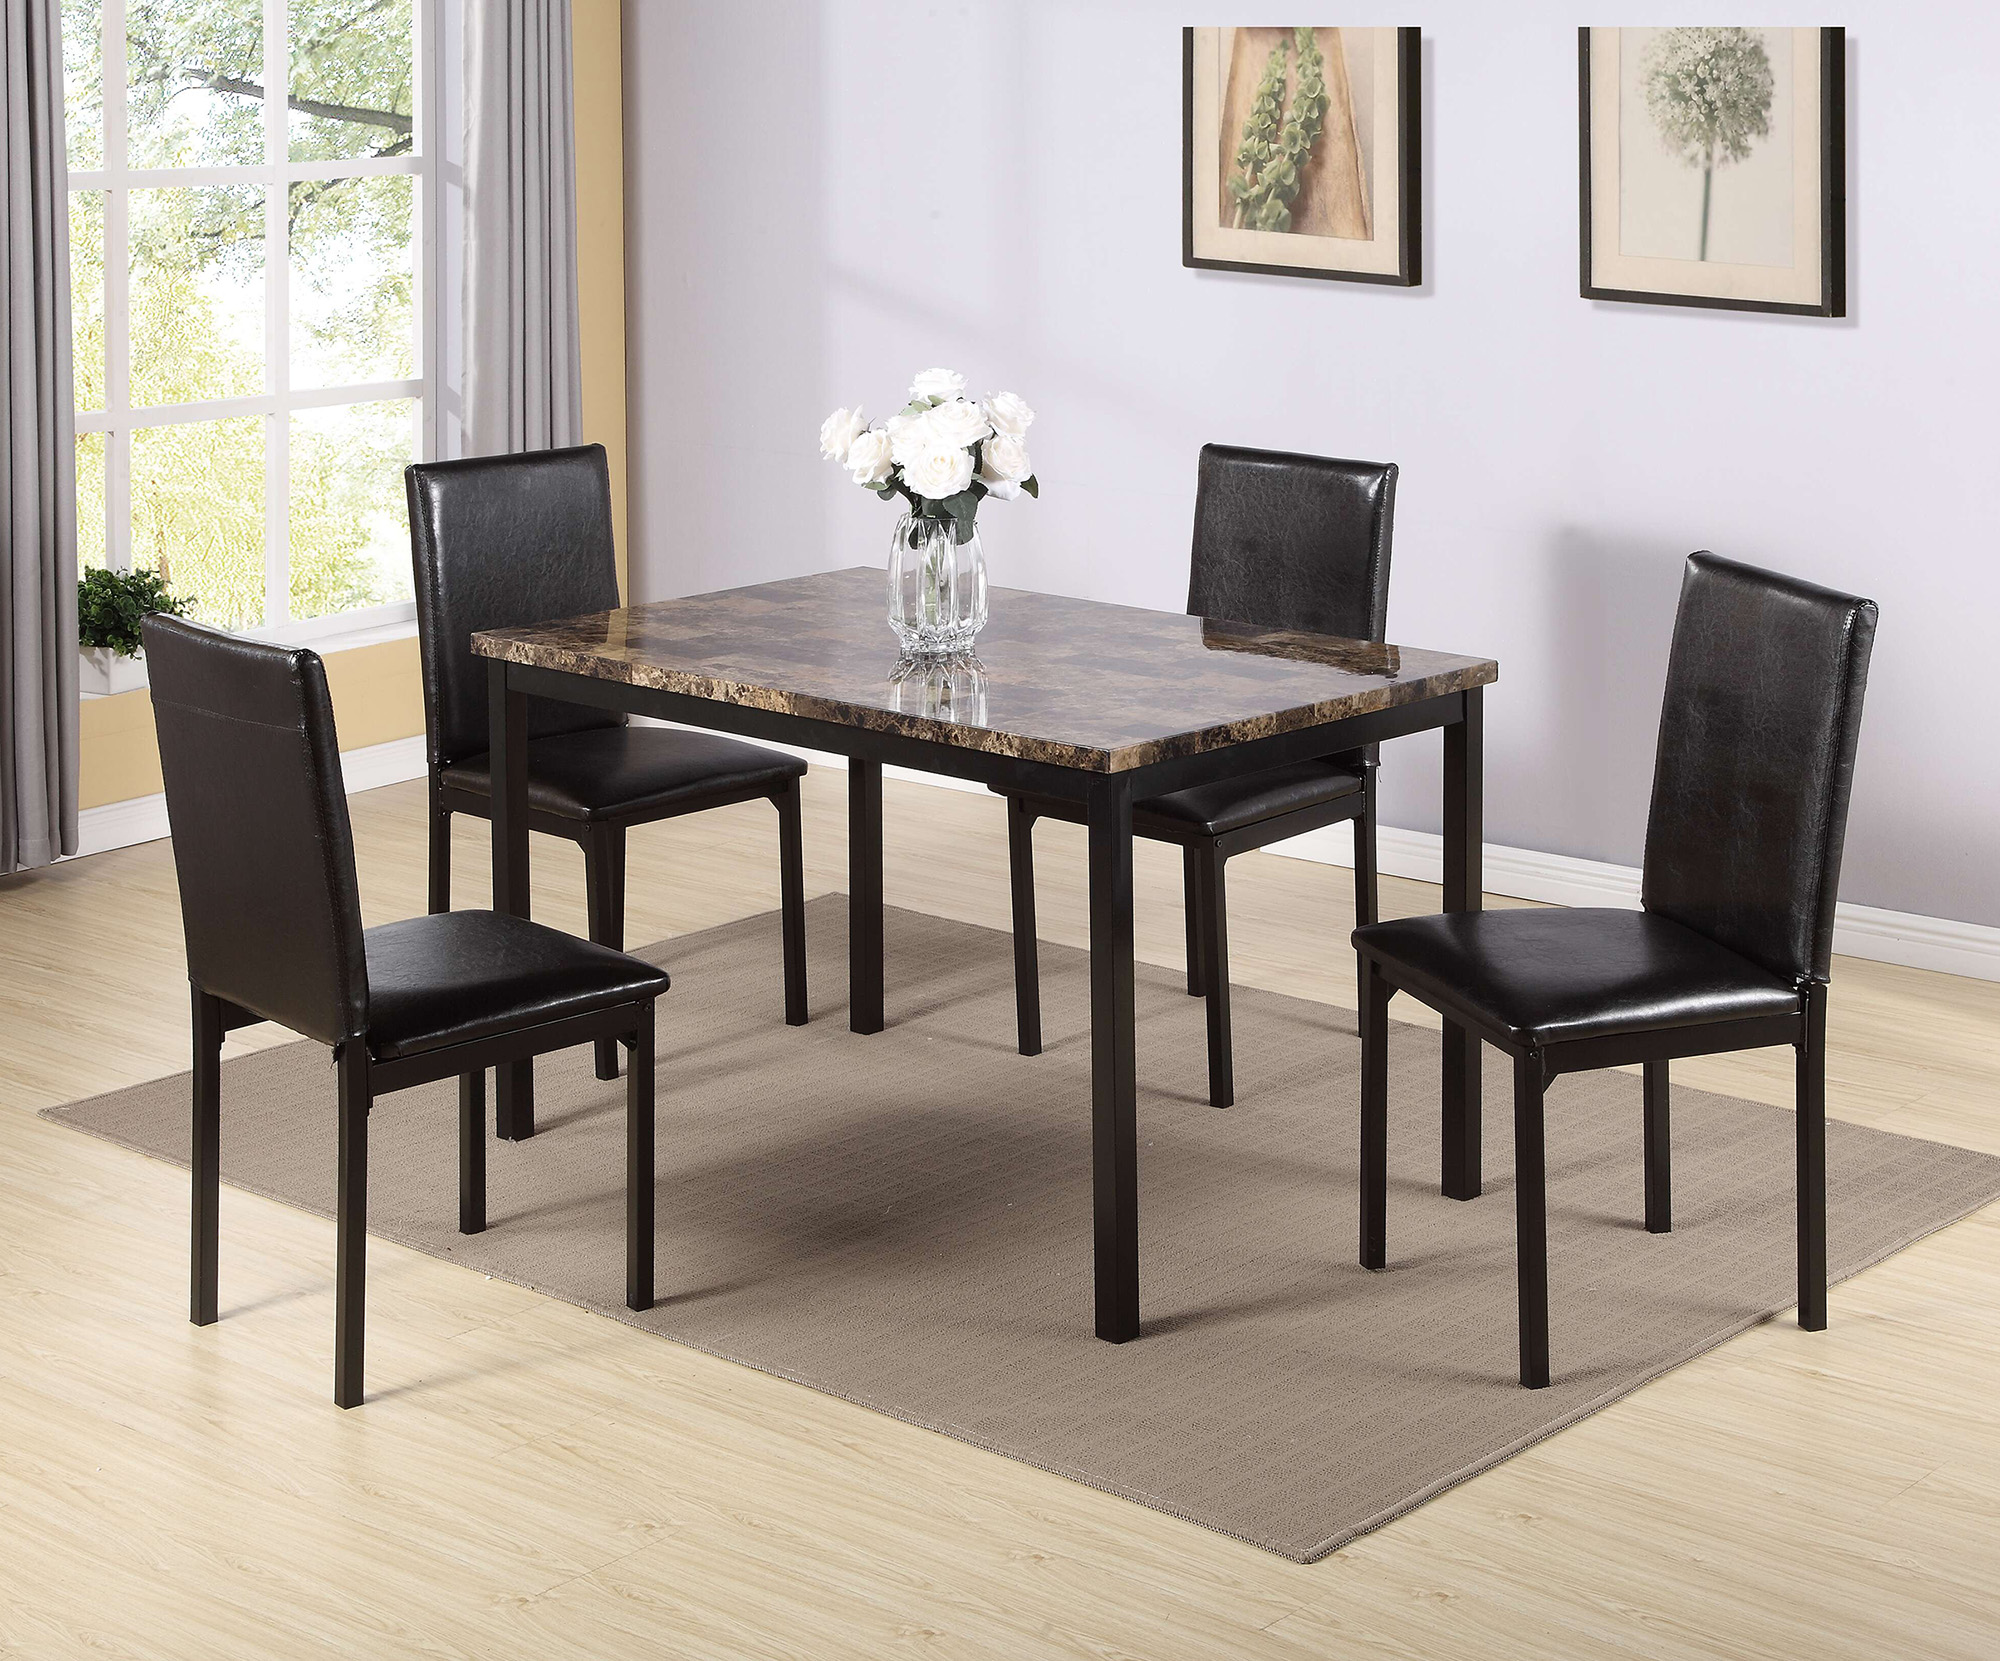 Furniture 5 Piece Metal Dinette Set with Faux Marble Top - Black-CASAINC